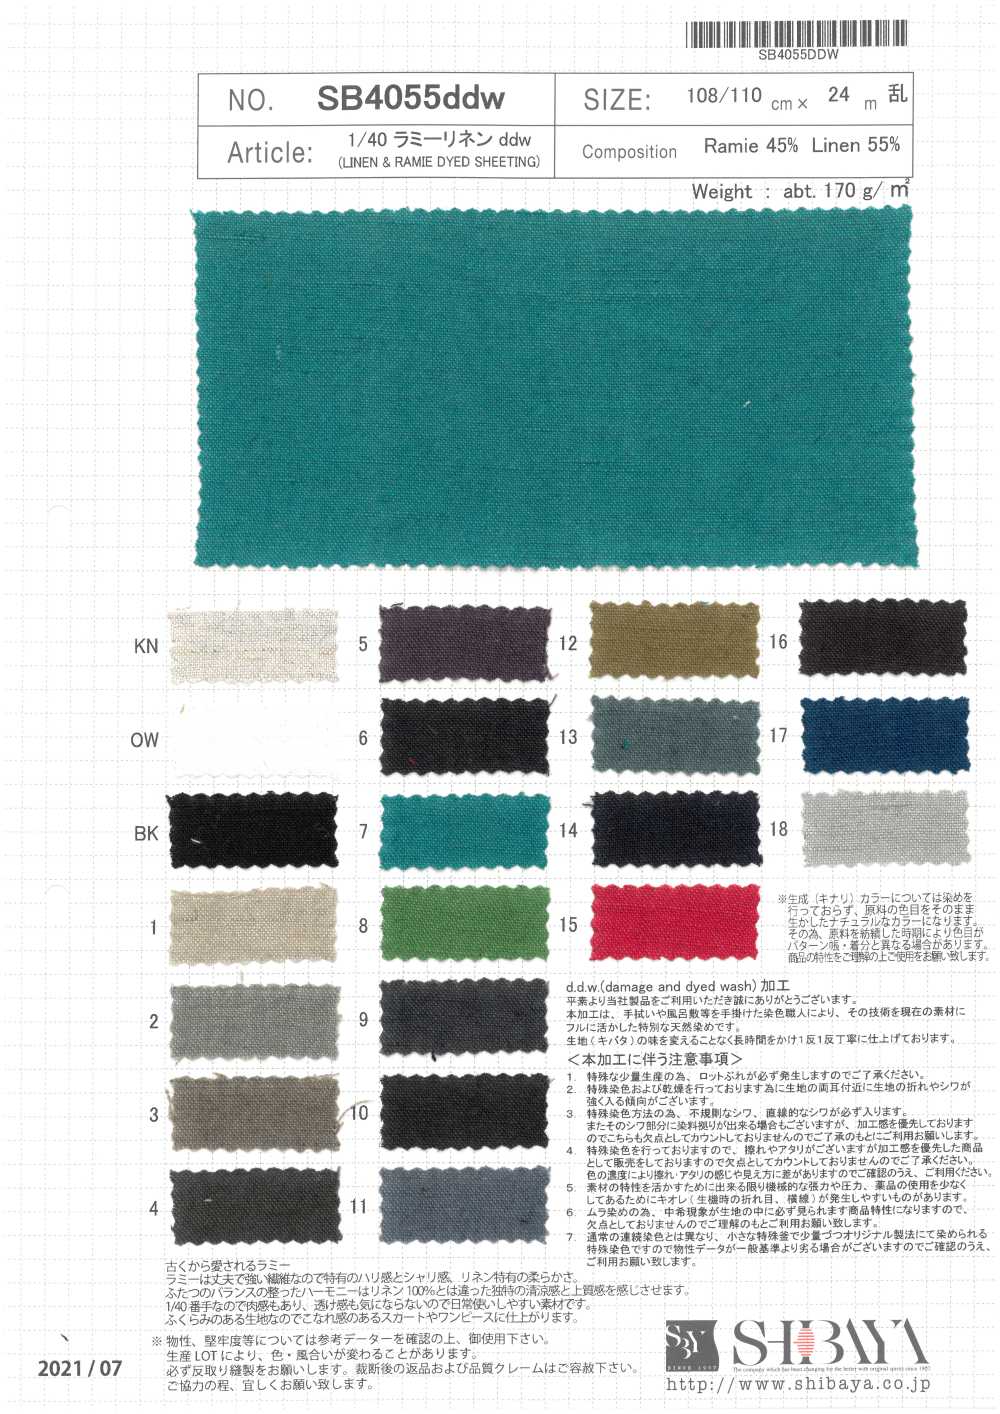 SB4055ddw 1/40 Ramie Linen Ddw[Textile / Fabric] SHIBAYA